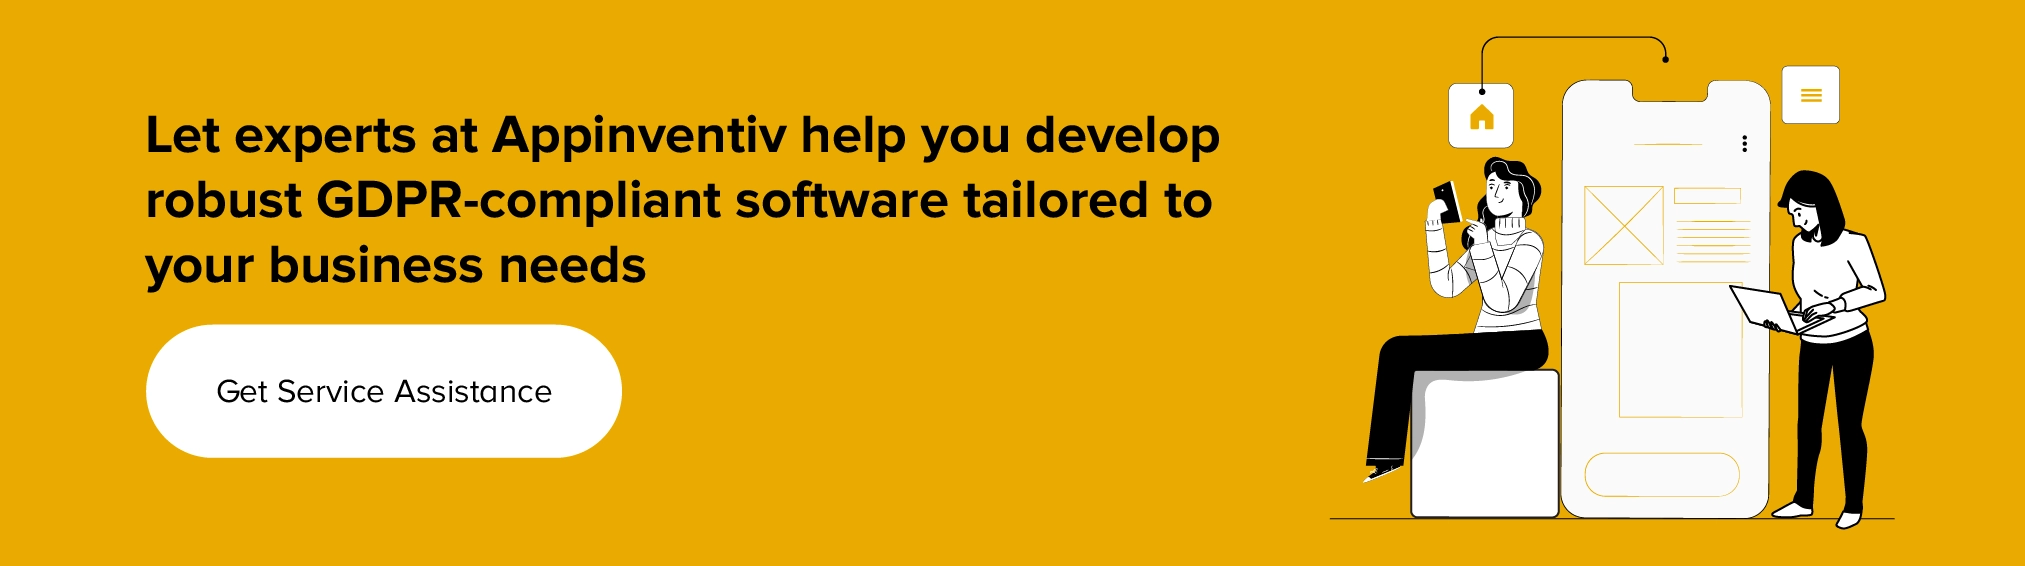 Obtenga asistencia de servicio para desarrollar software compatible con GDPR